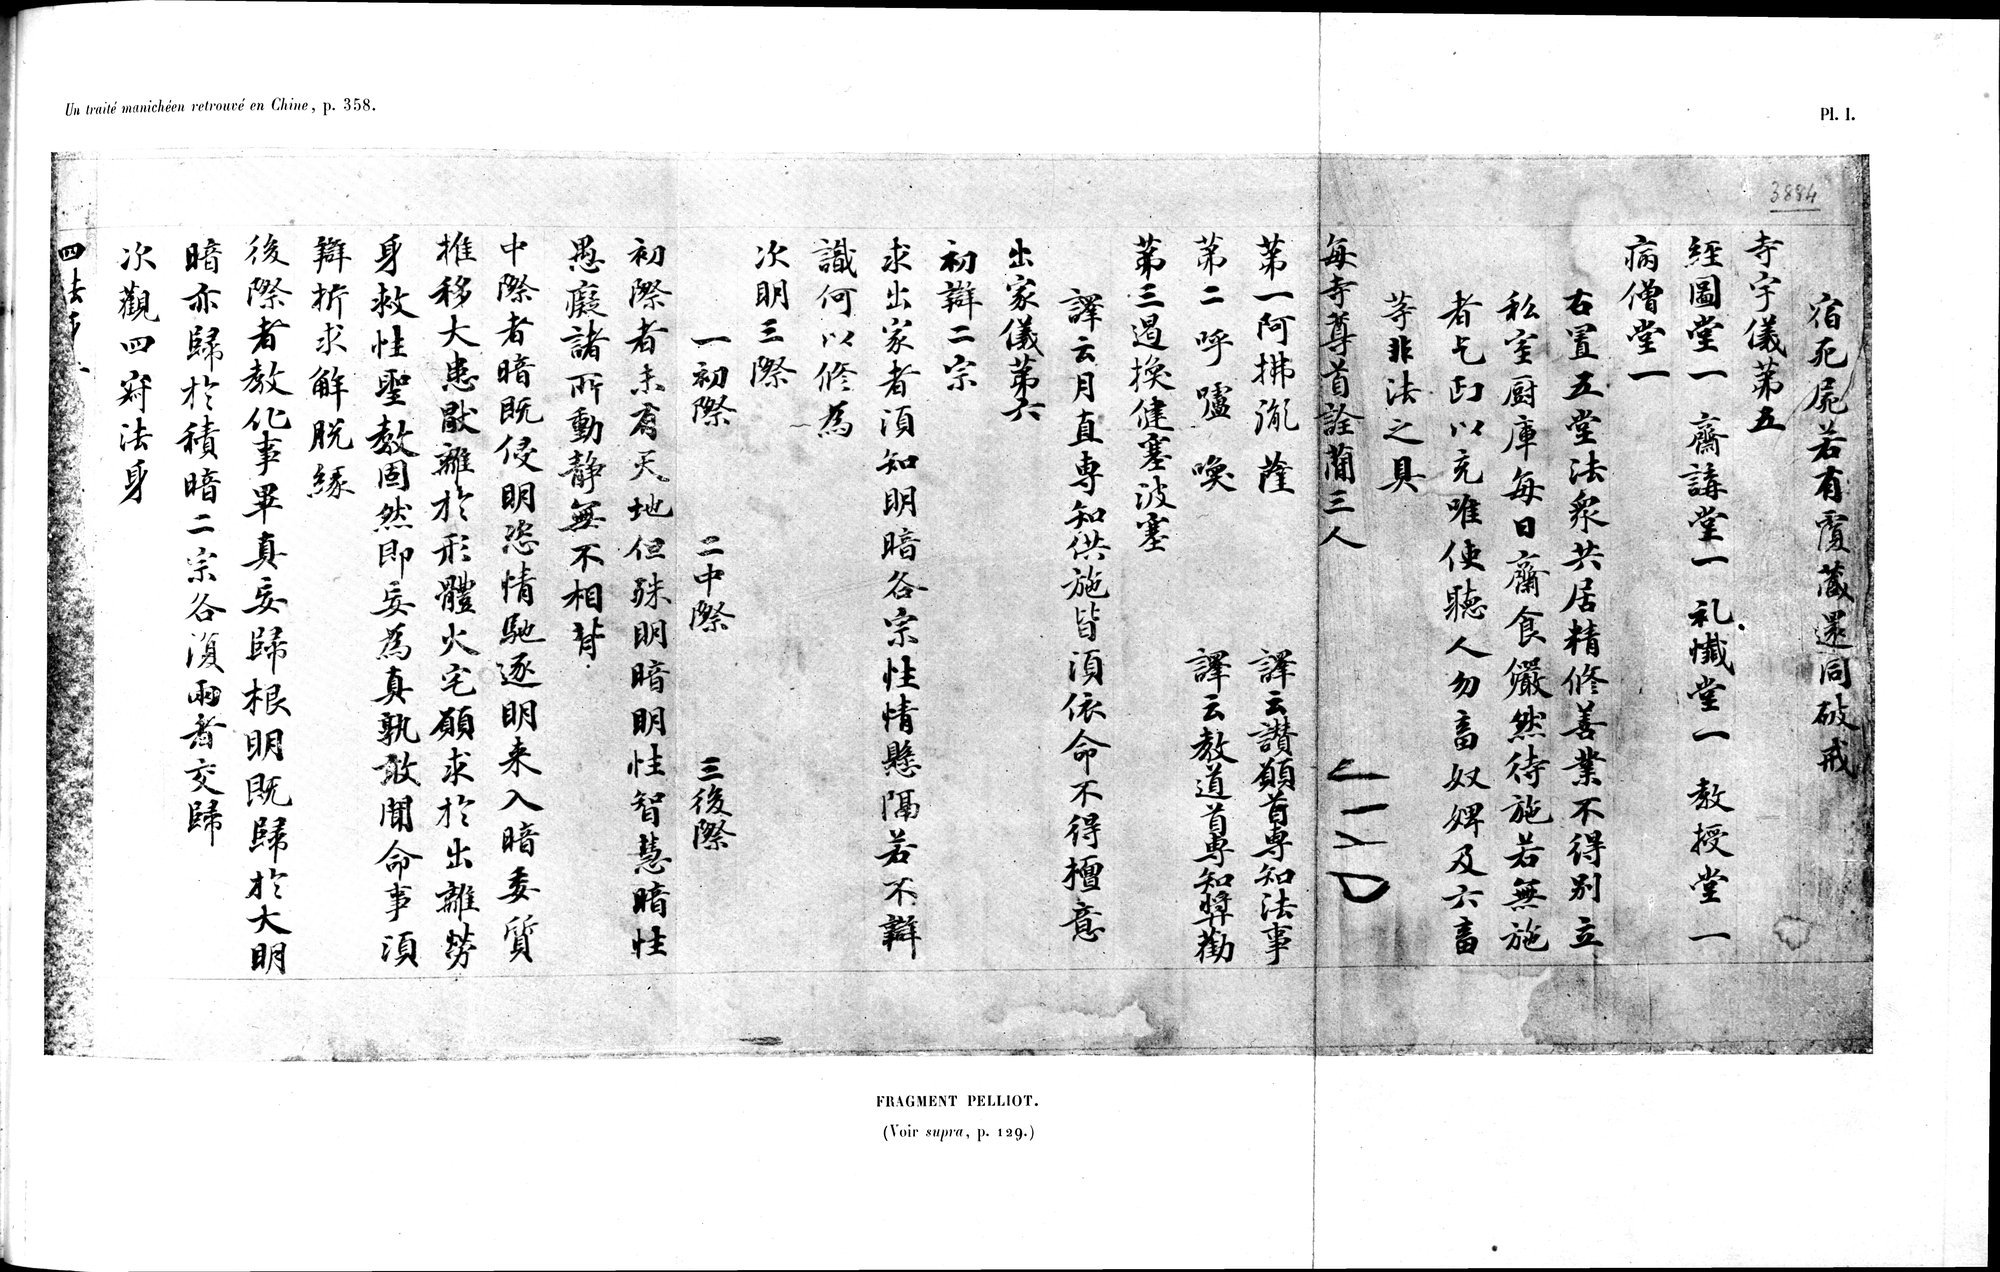 Un traité manichéen retrouvé en Chine : vol.1 / Page 369 (Grayscale High Resolution Image)